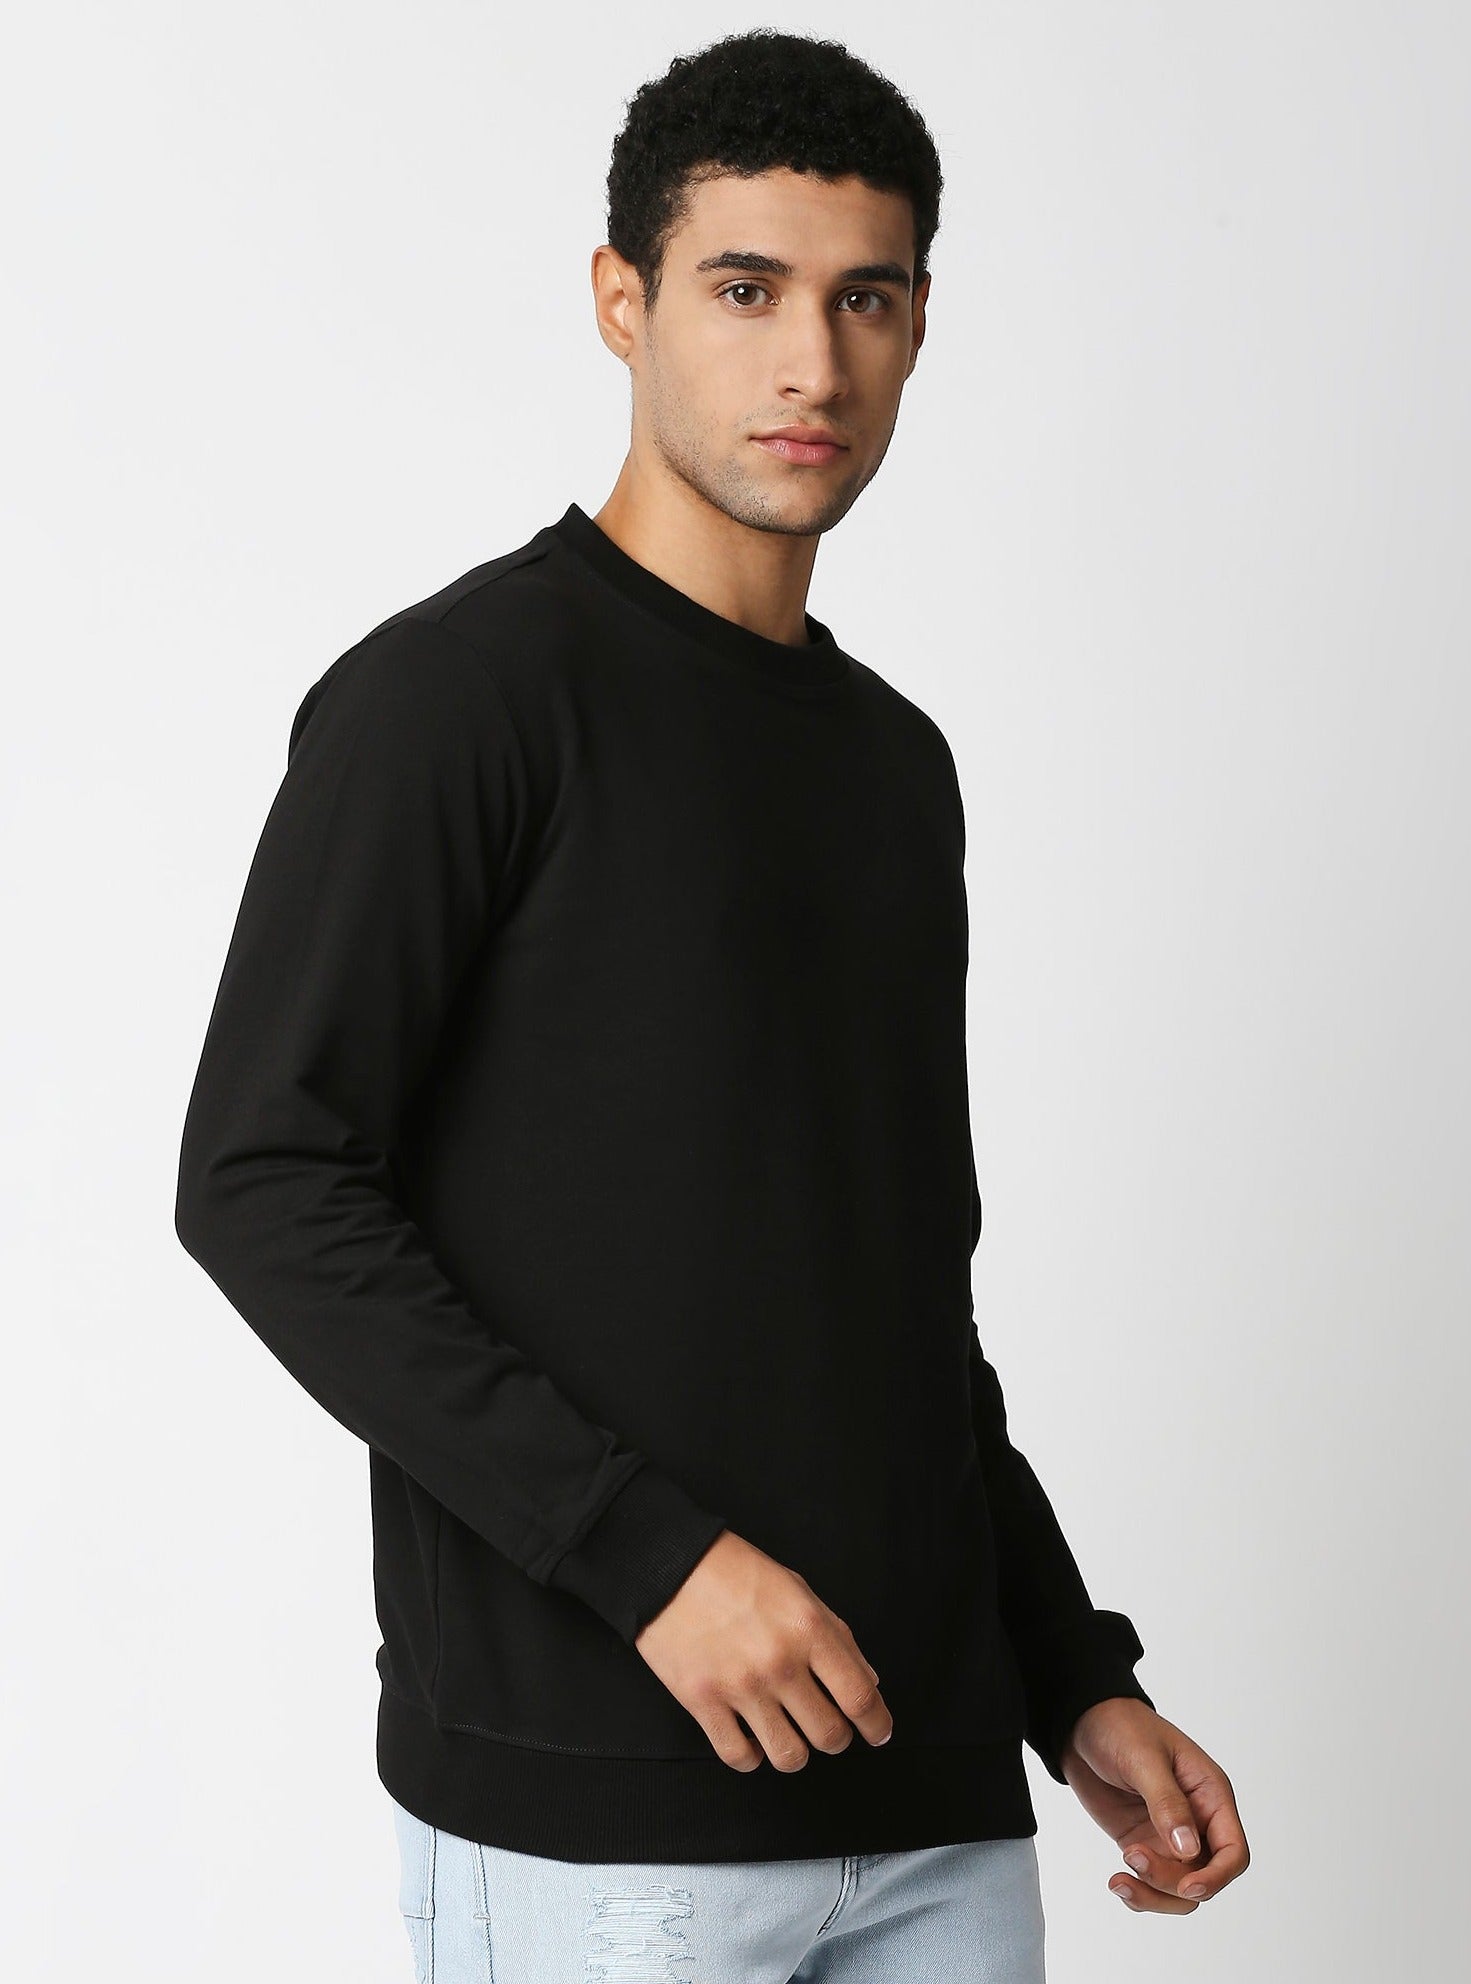 Fostino Vintage Black Plain Full Sleeves Tshirt - Fostino Shirts & Tops